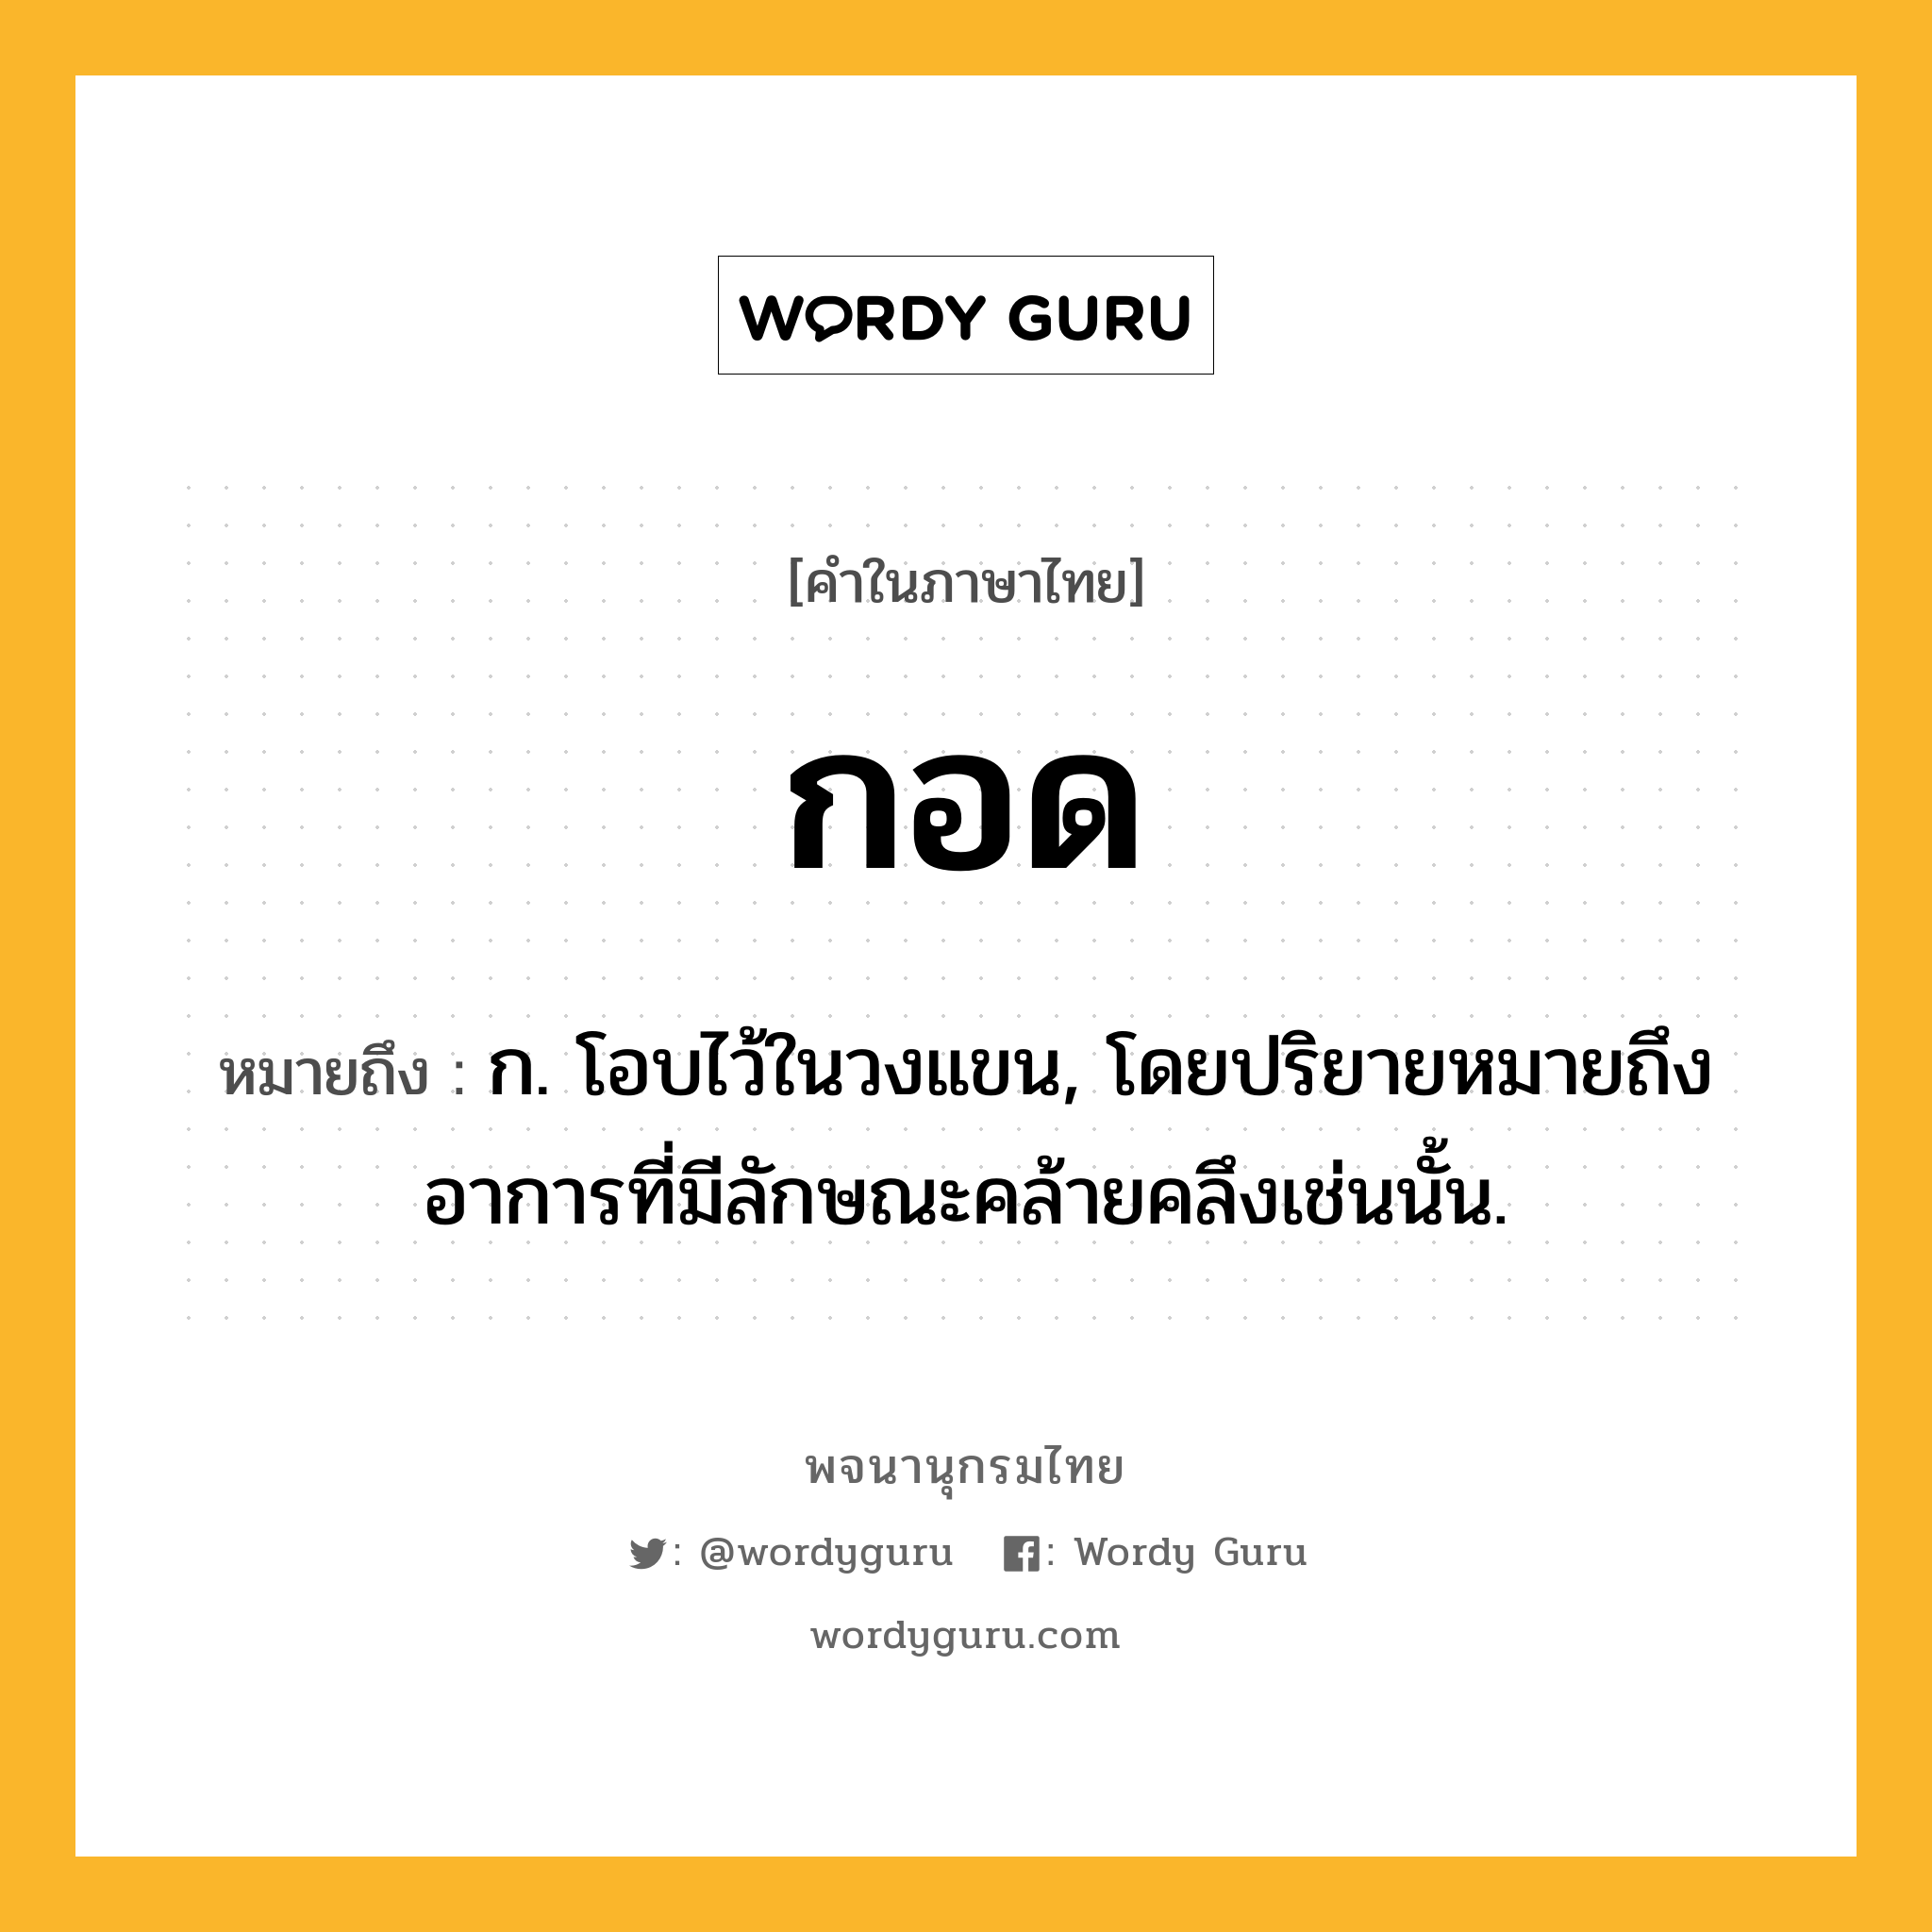 กอด ความหมาย หมายถึงอะไร?, คำในภาษาไทย กอด หมายถึง ก. โอบไว้ในวงแขน, โดยปริยายหมายถึงอาการที่มีลักษณะคล้ายคลึงเช่นนั้น.